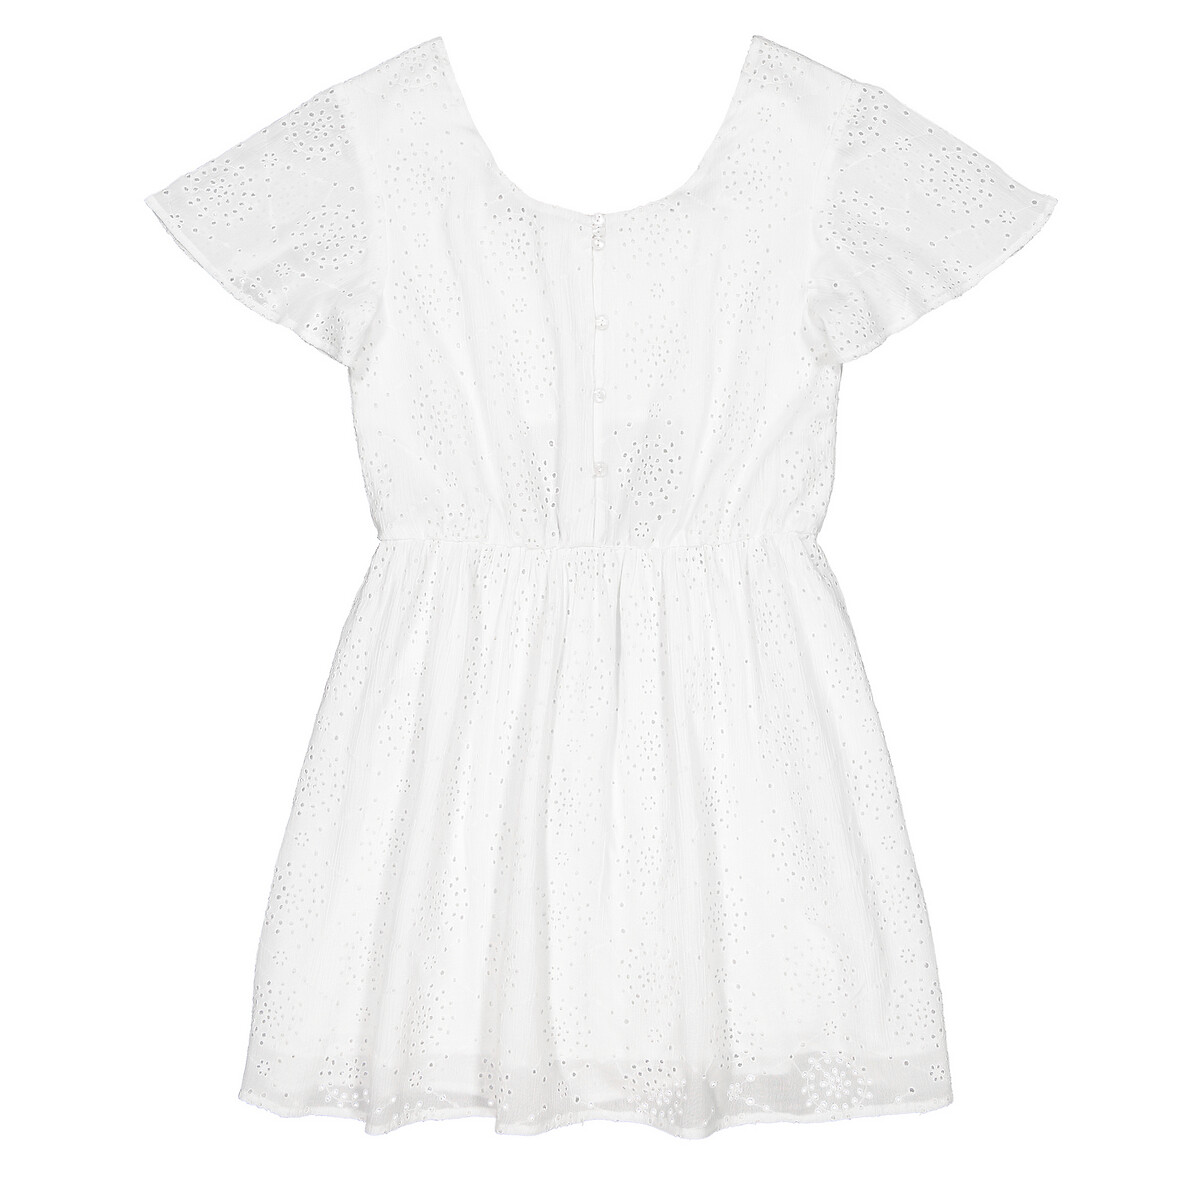 Платье LaRedoute Струящееся из английской вышивкой 10-18 лет 18 лет - 168 см белый, размер 18 лет - 168 см - фото 3